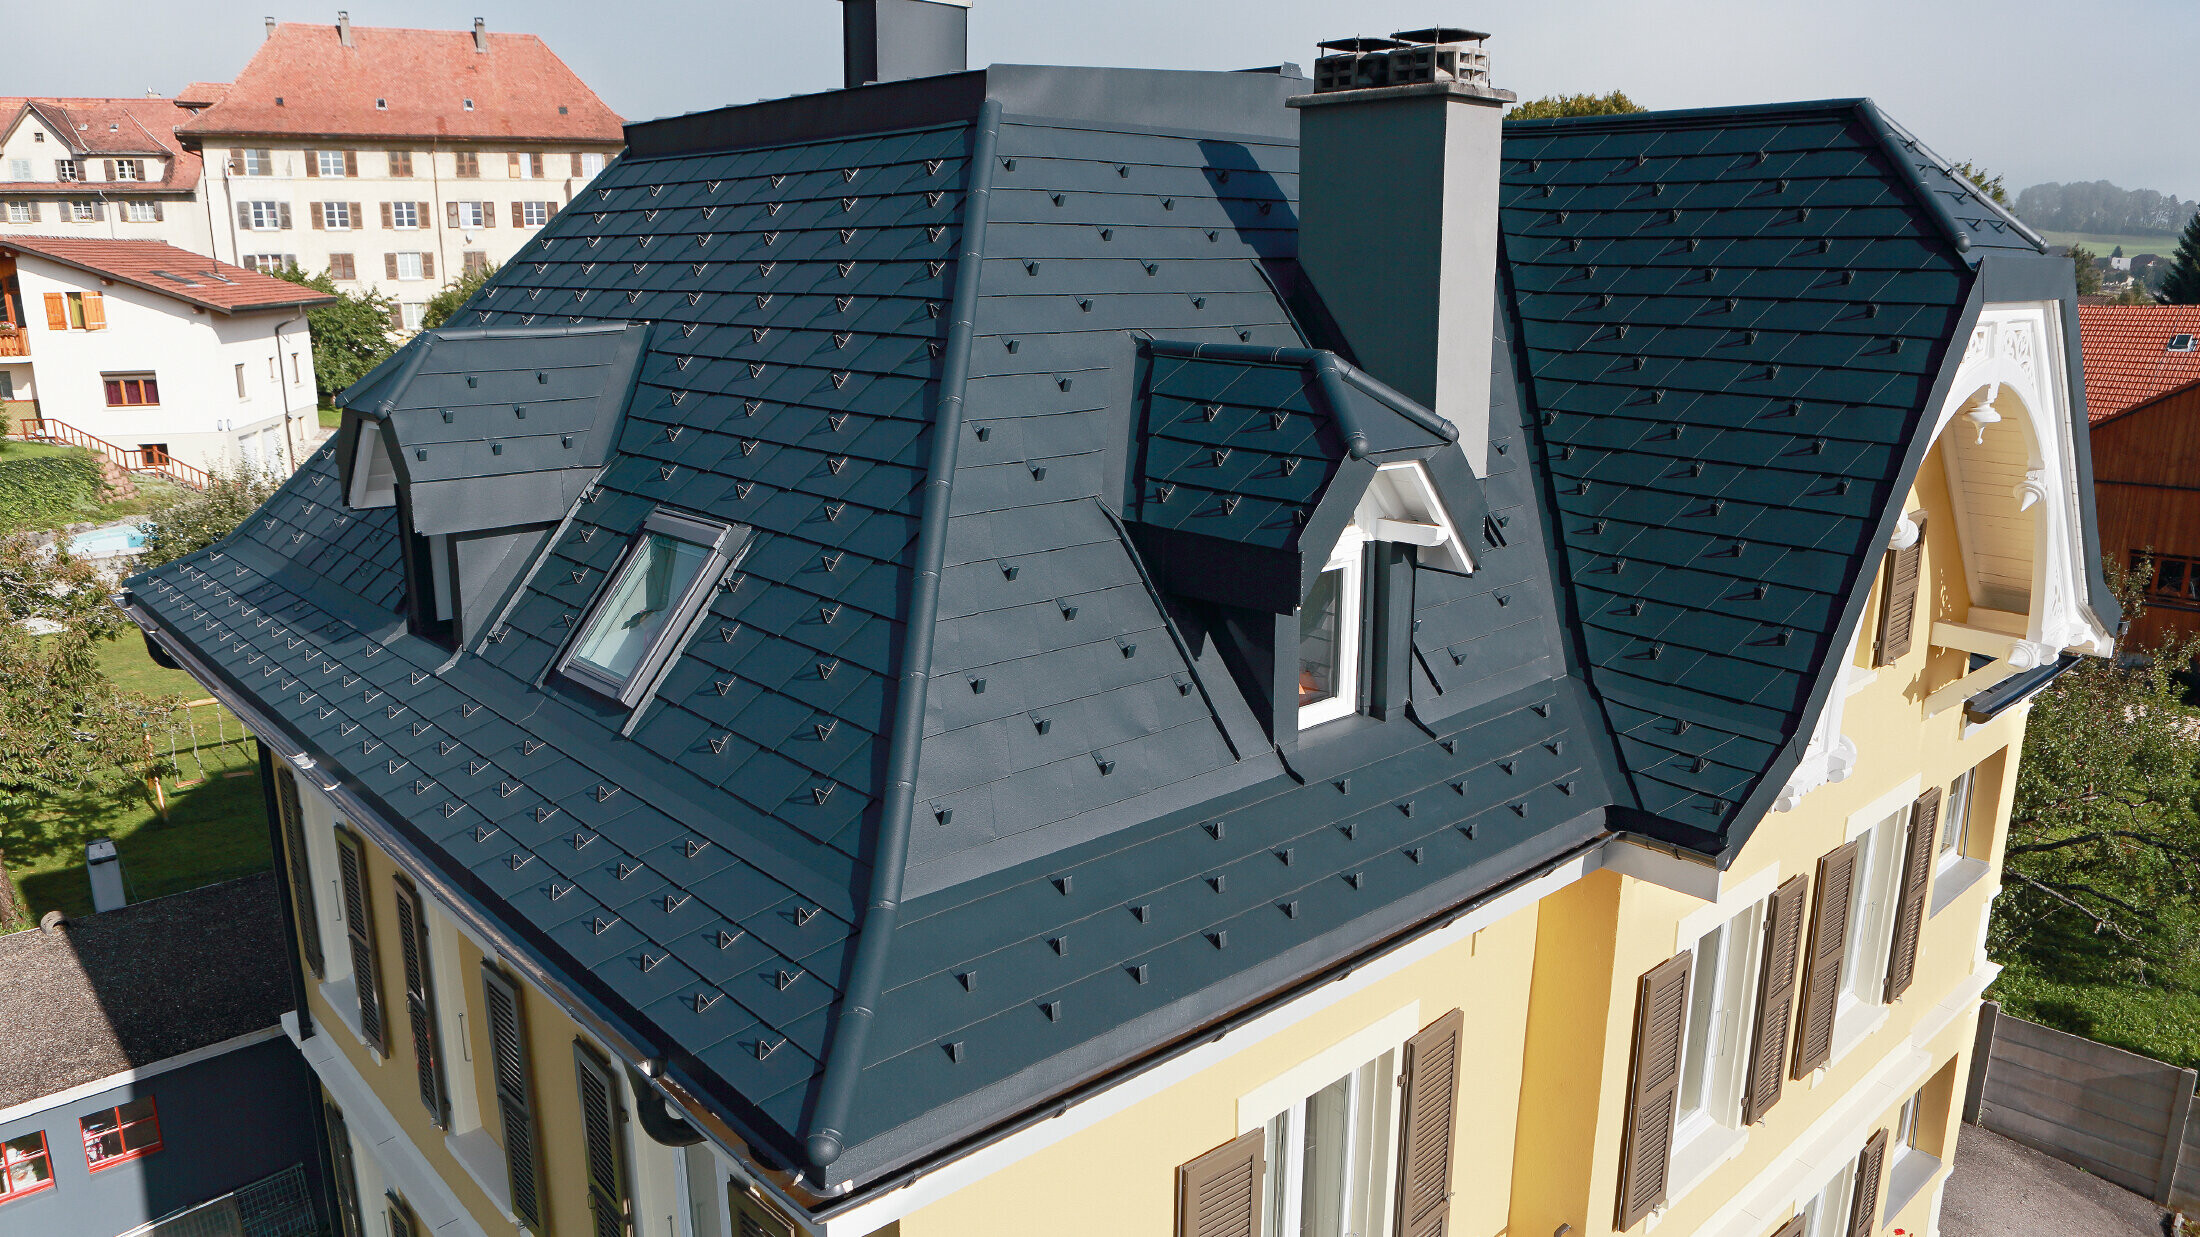 Vila vo Švajčiarsku, strecha s mnohými úžľabiami a bez vikierov, strecha je pokrytá hliníkovým šindľom od spoločnosti PREFA vo farbe P.10 antracitová